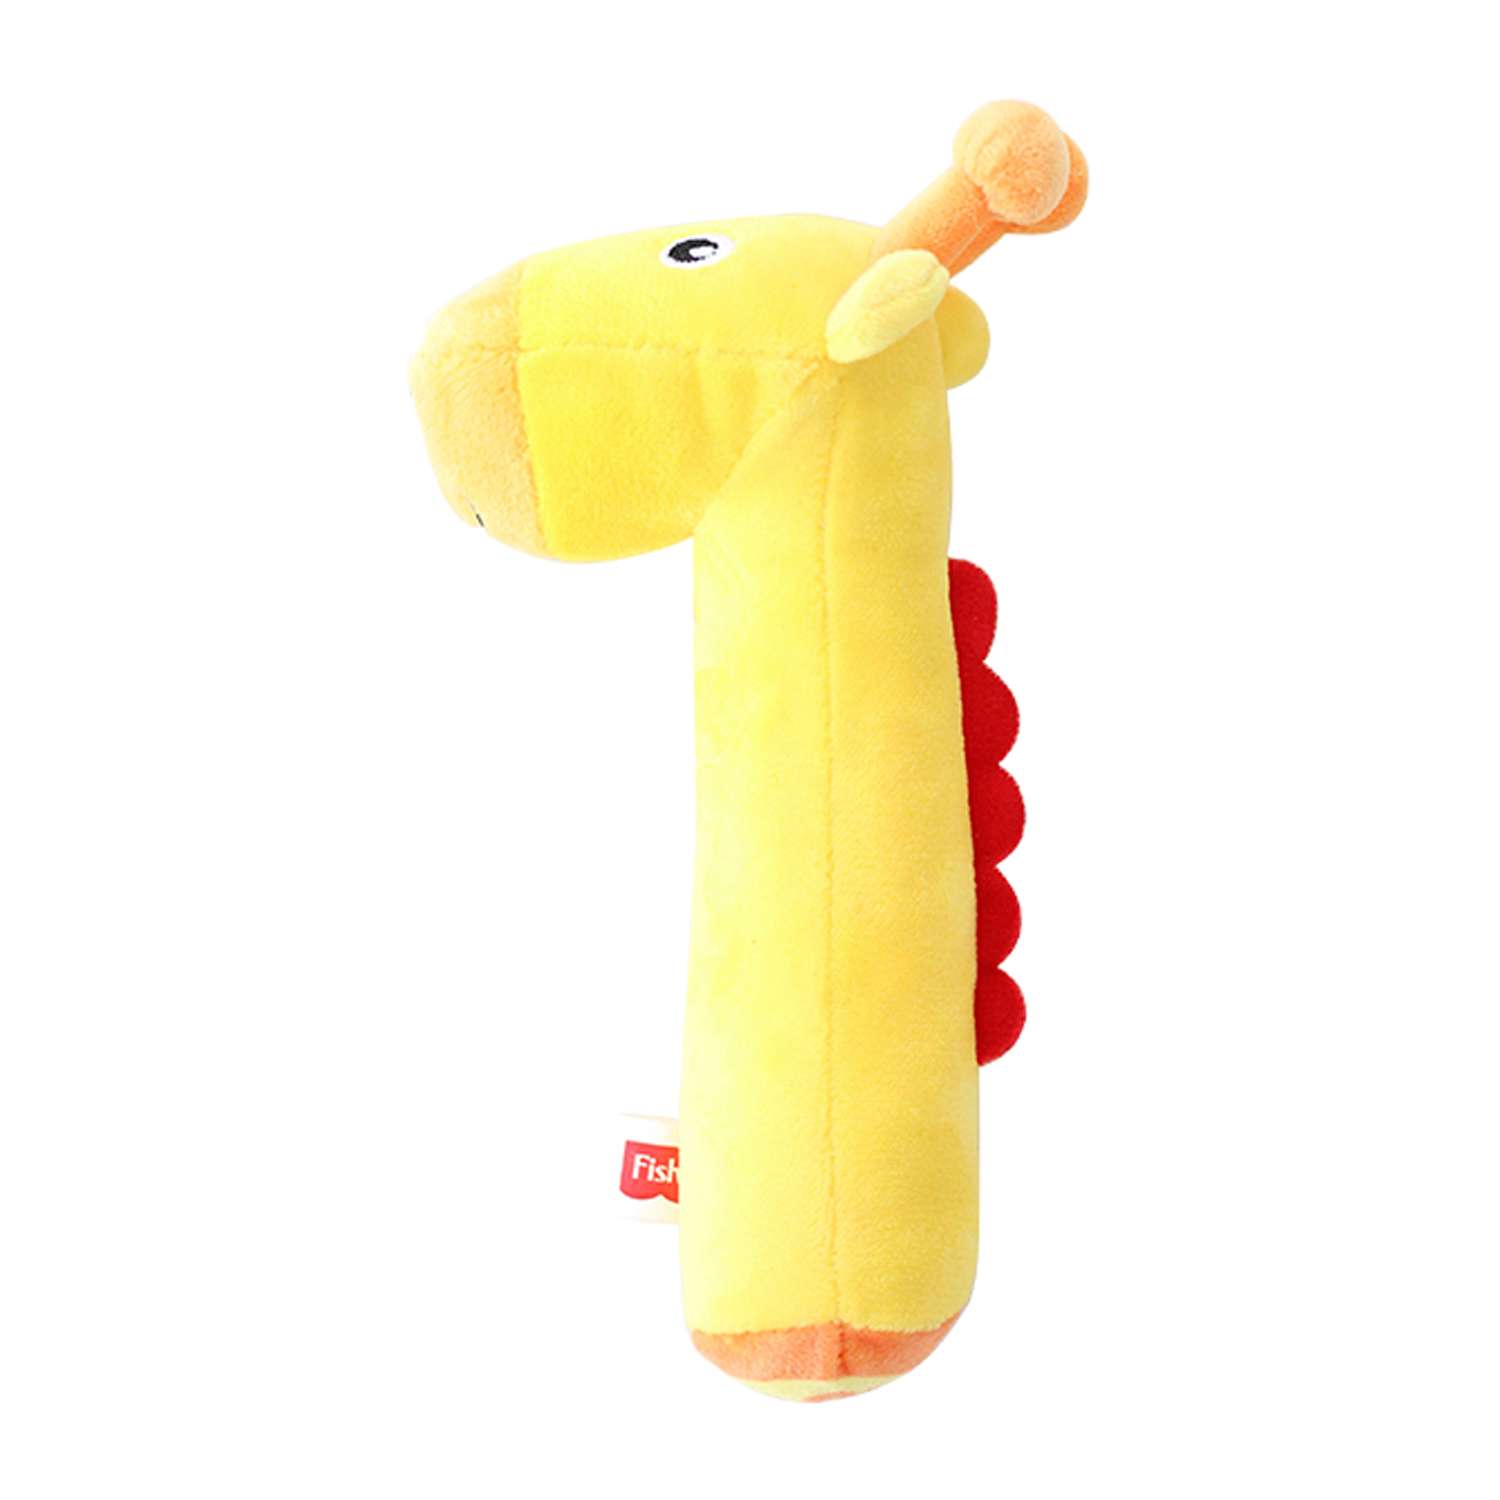 Погремушка-пищалка Fisher Price Жирафик развивающая мягкая игрушка для детей 0+ - фото 1